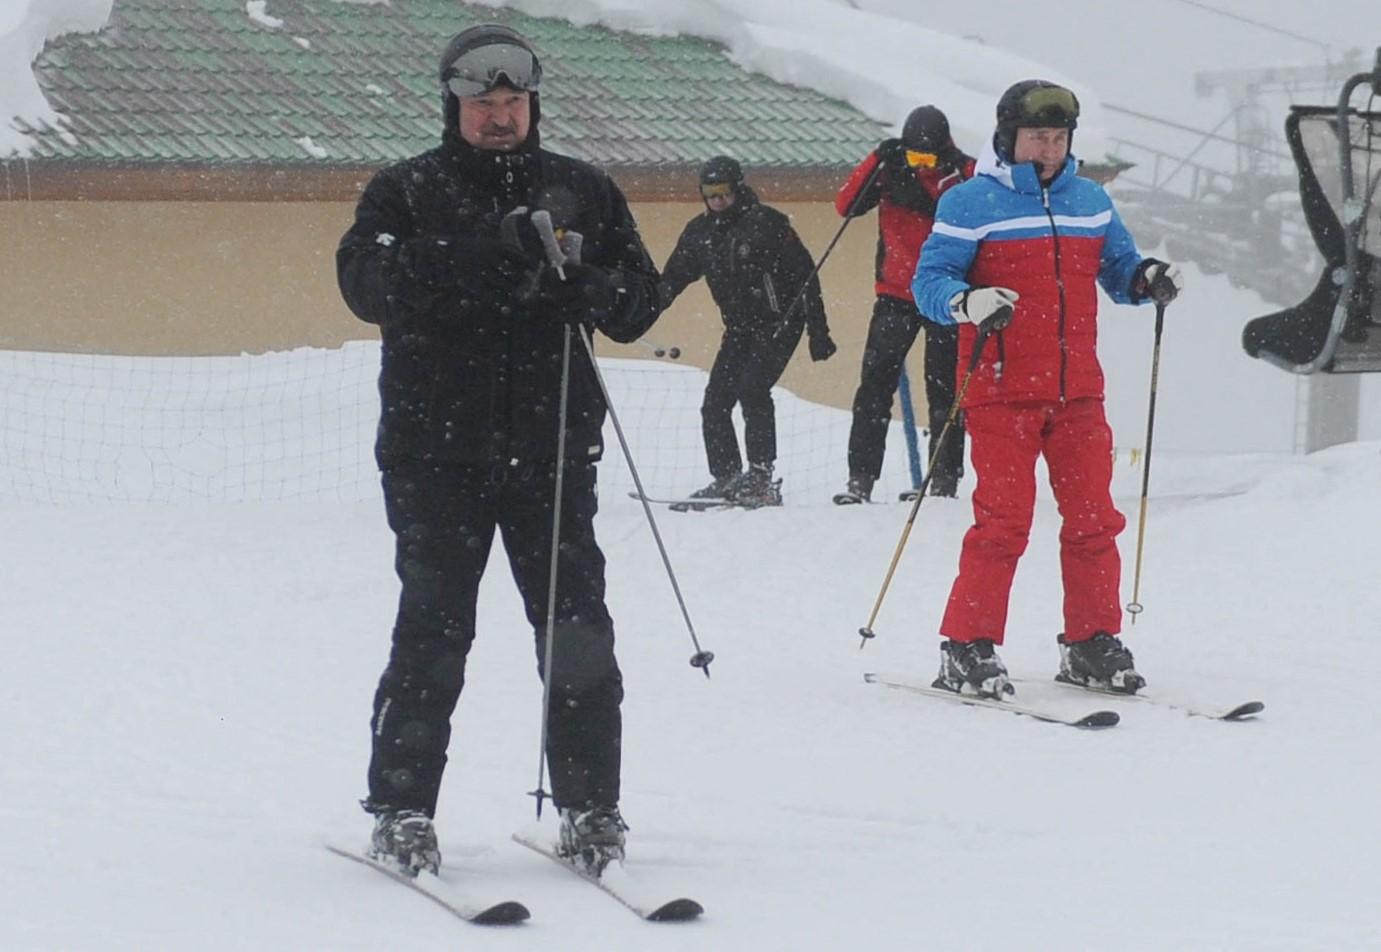 Dok su širom Bjelorusije demonstracije, Lukašenko skija s Putinom